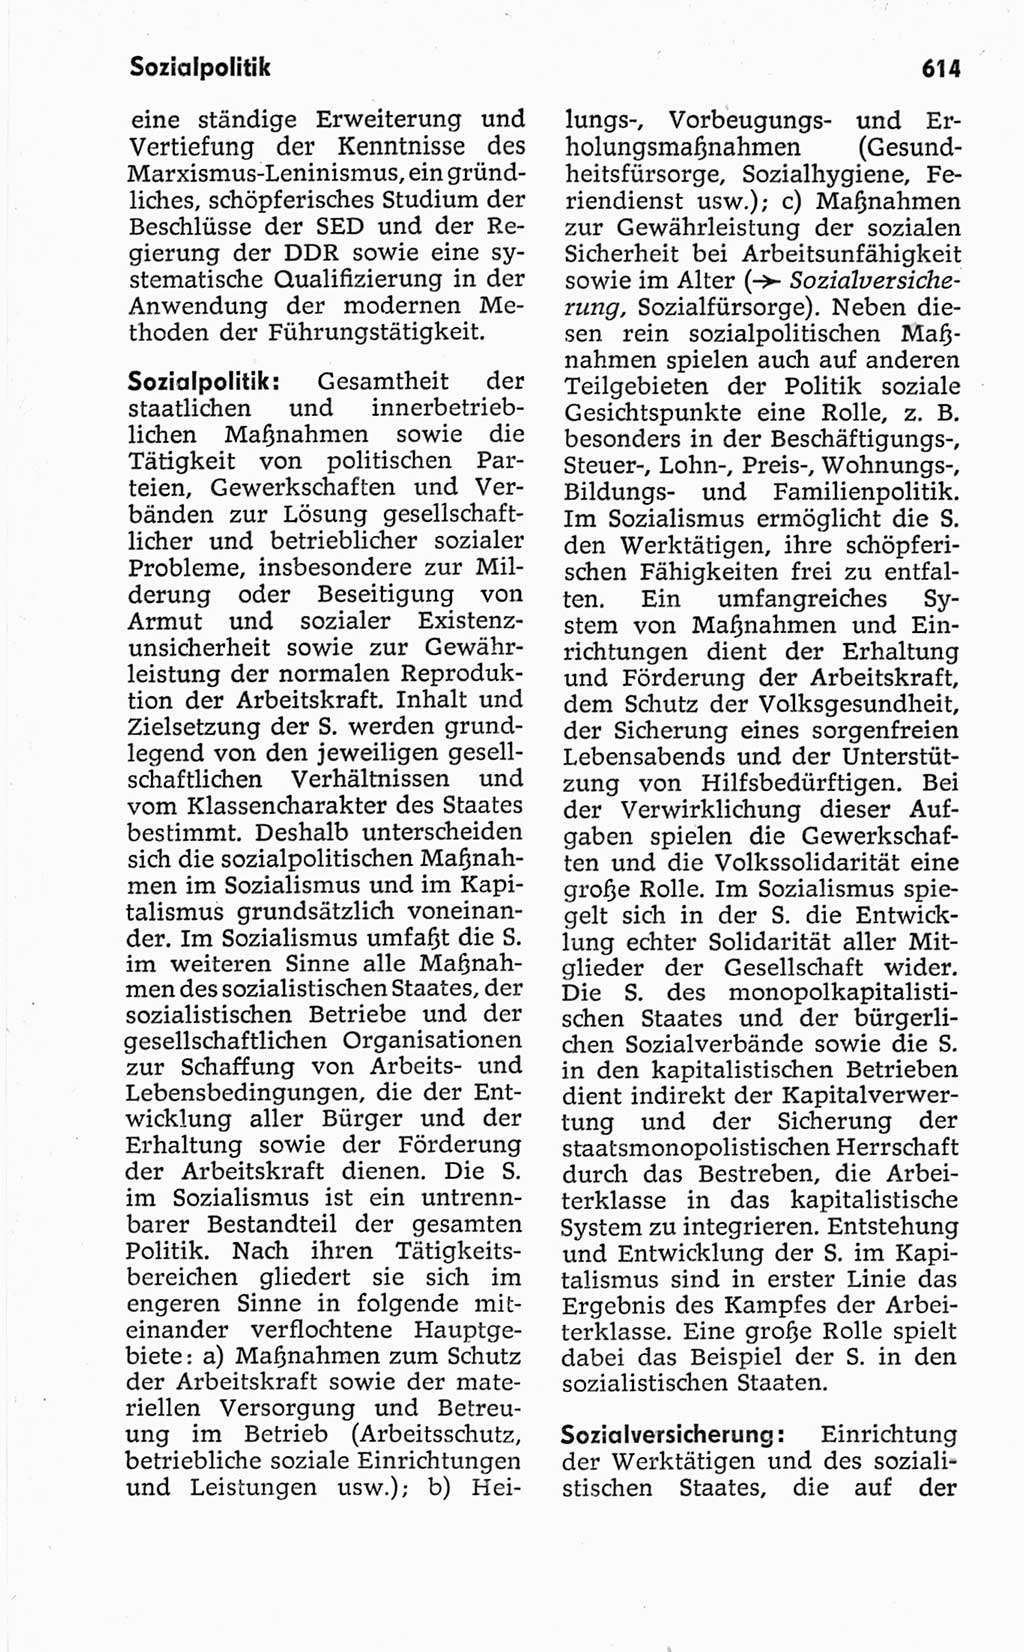 Kleines politisches Wörterbuch [Deutsche Demokratische Republik (DDR)] 1967, Seite 614 (Kl. pol. Wb. DDR 1967, S. 614)